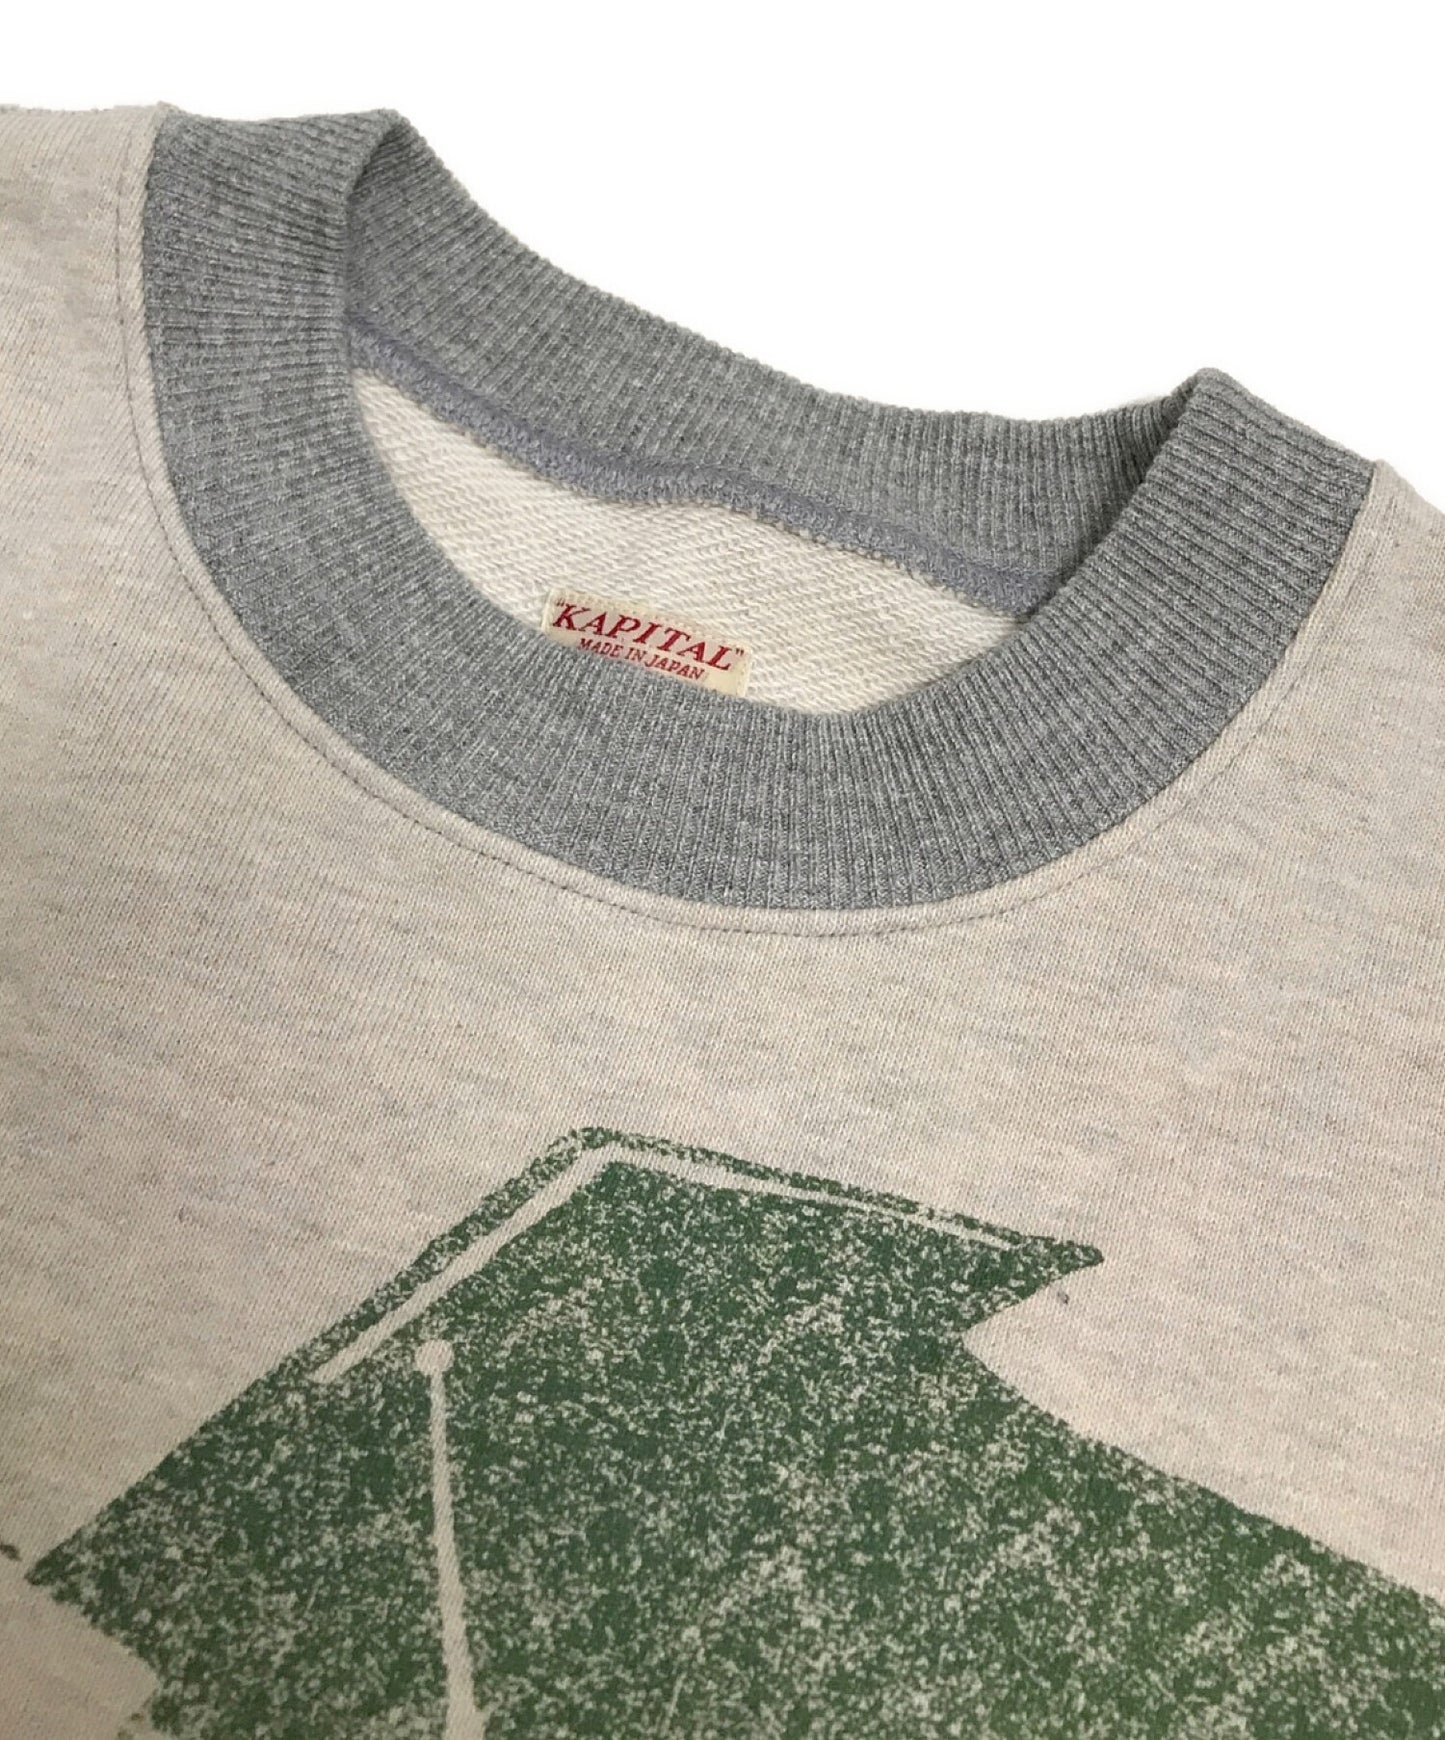 Kapital Top衬里的皮草Dolman运动衫钢琴状态印刷运动衫切割和缝制EK-1131